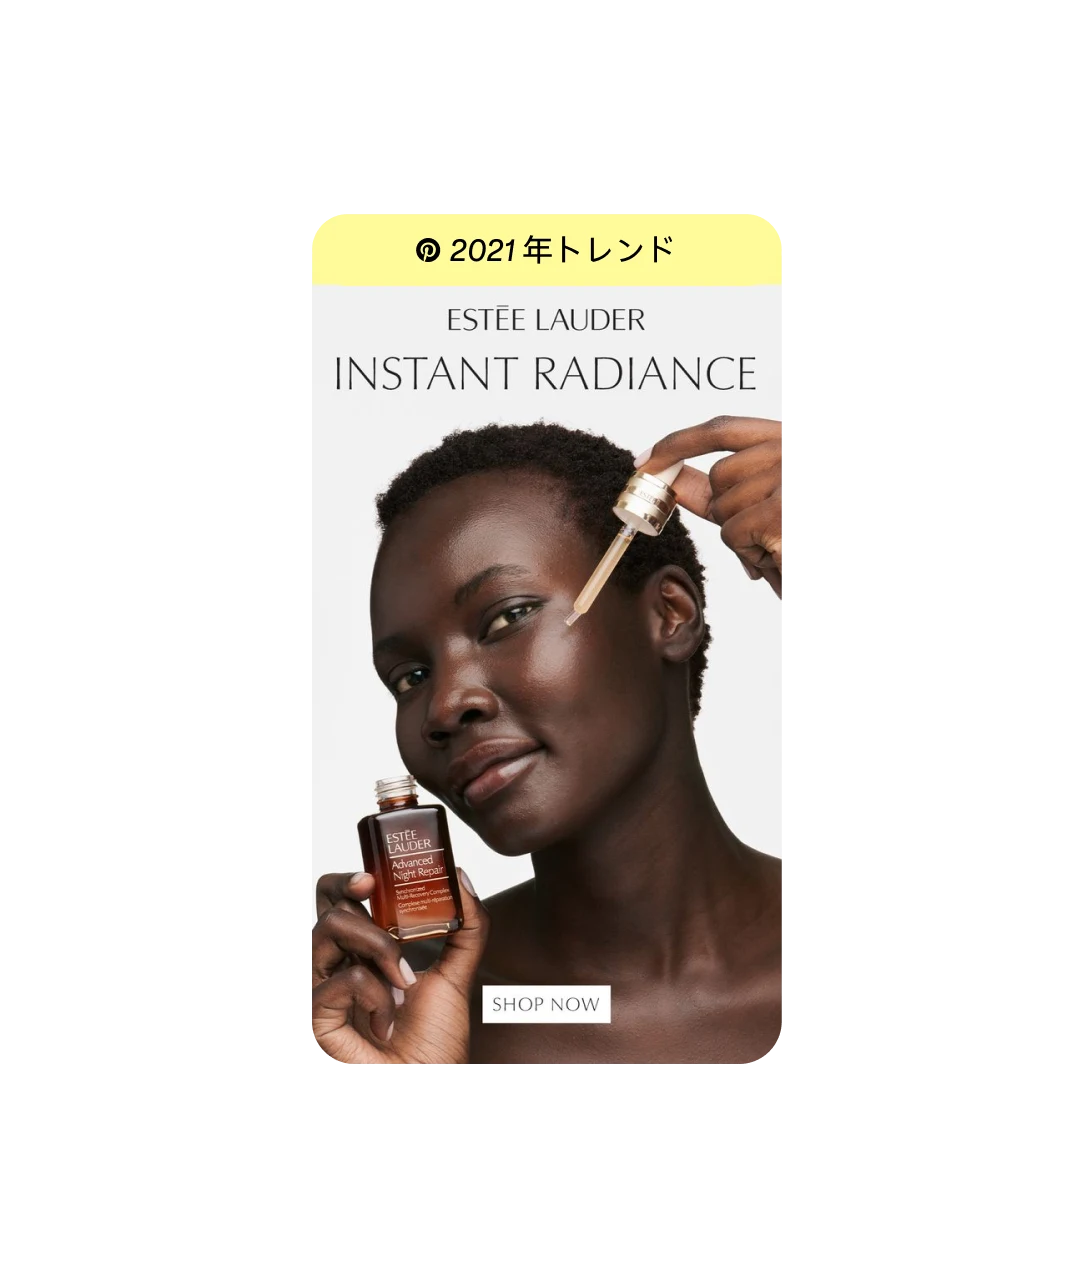 「2021 年トレンド：Estée Lauder Instant Radiance」とタイトルが付いたピン。黒人女性がセラムを目元に塗ろうとしている画像、下部に「商品を見る」ボタン付き。